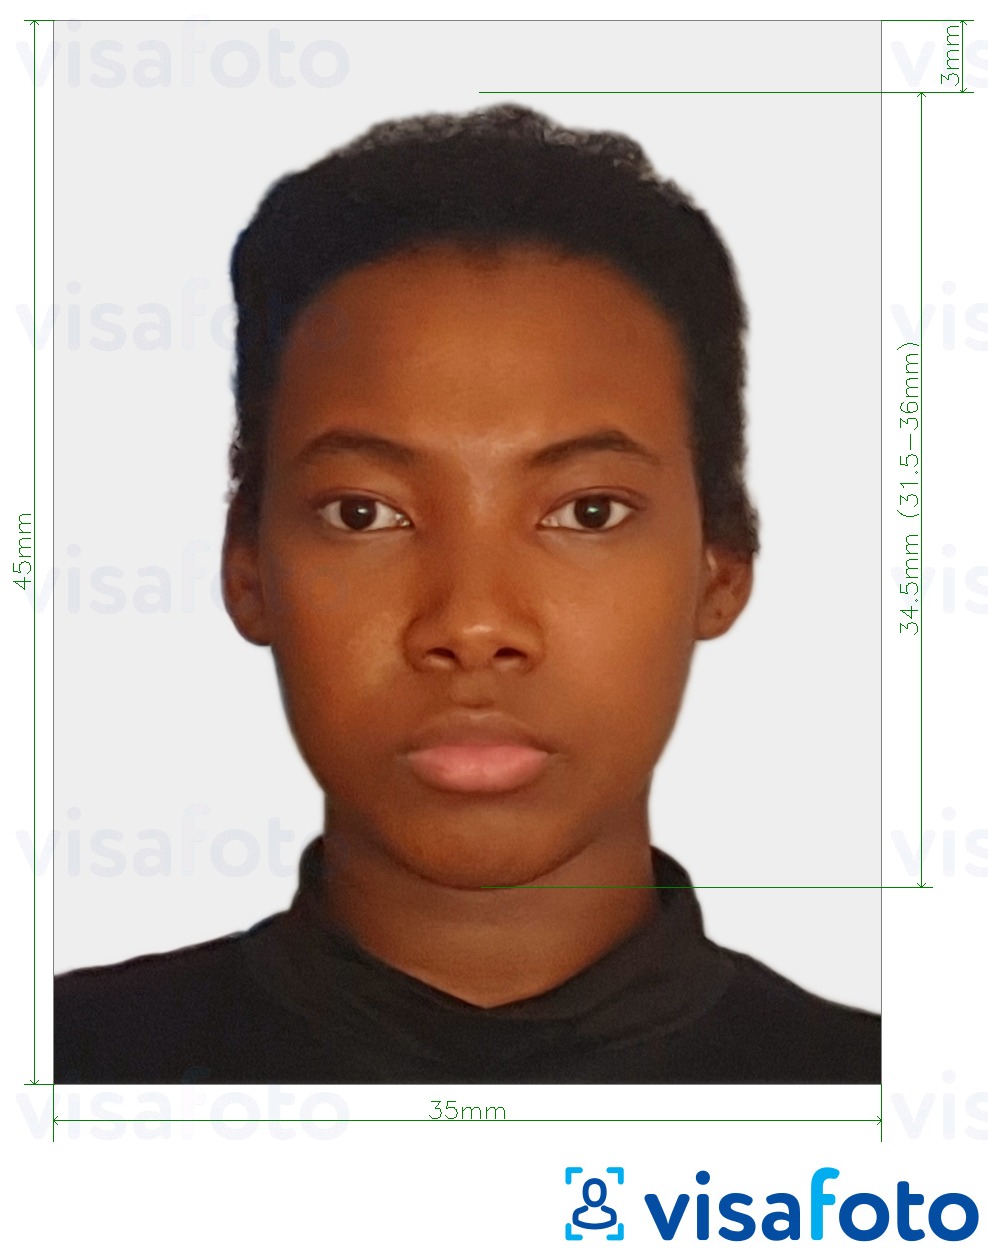 Ví dụ cho ảnh với Ảnh visa Zimbabwe 35x45 mm (3,5x4,5 cm) cùng kích cỡ xác định chính xác.